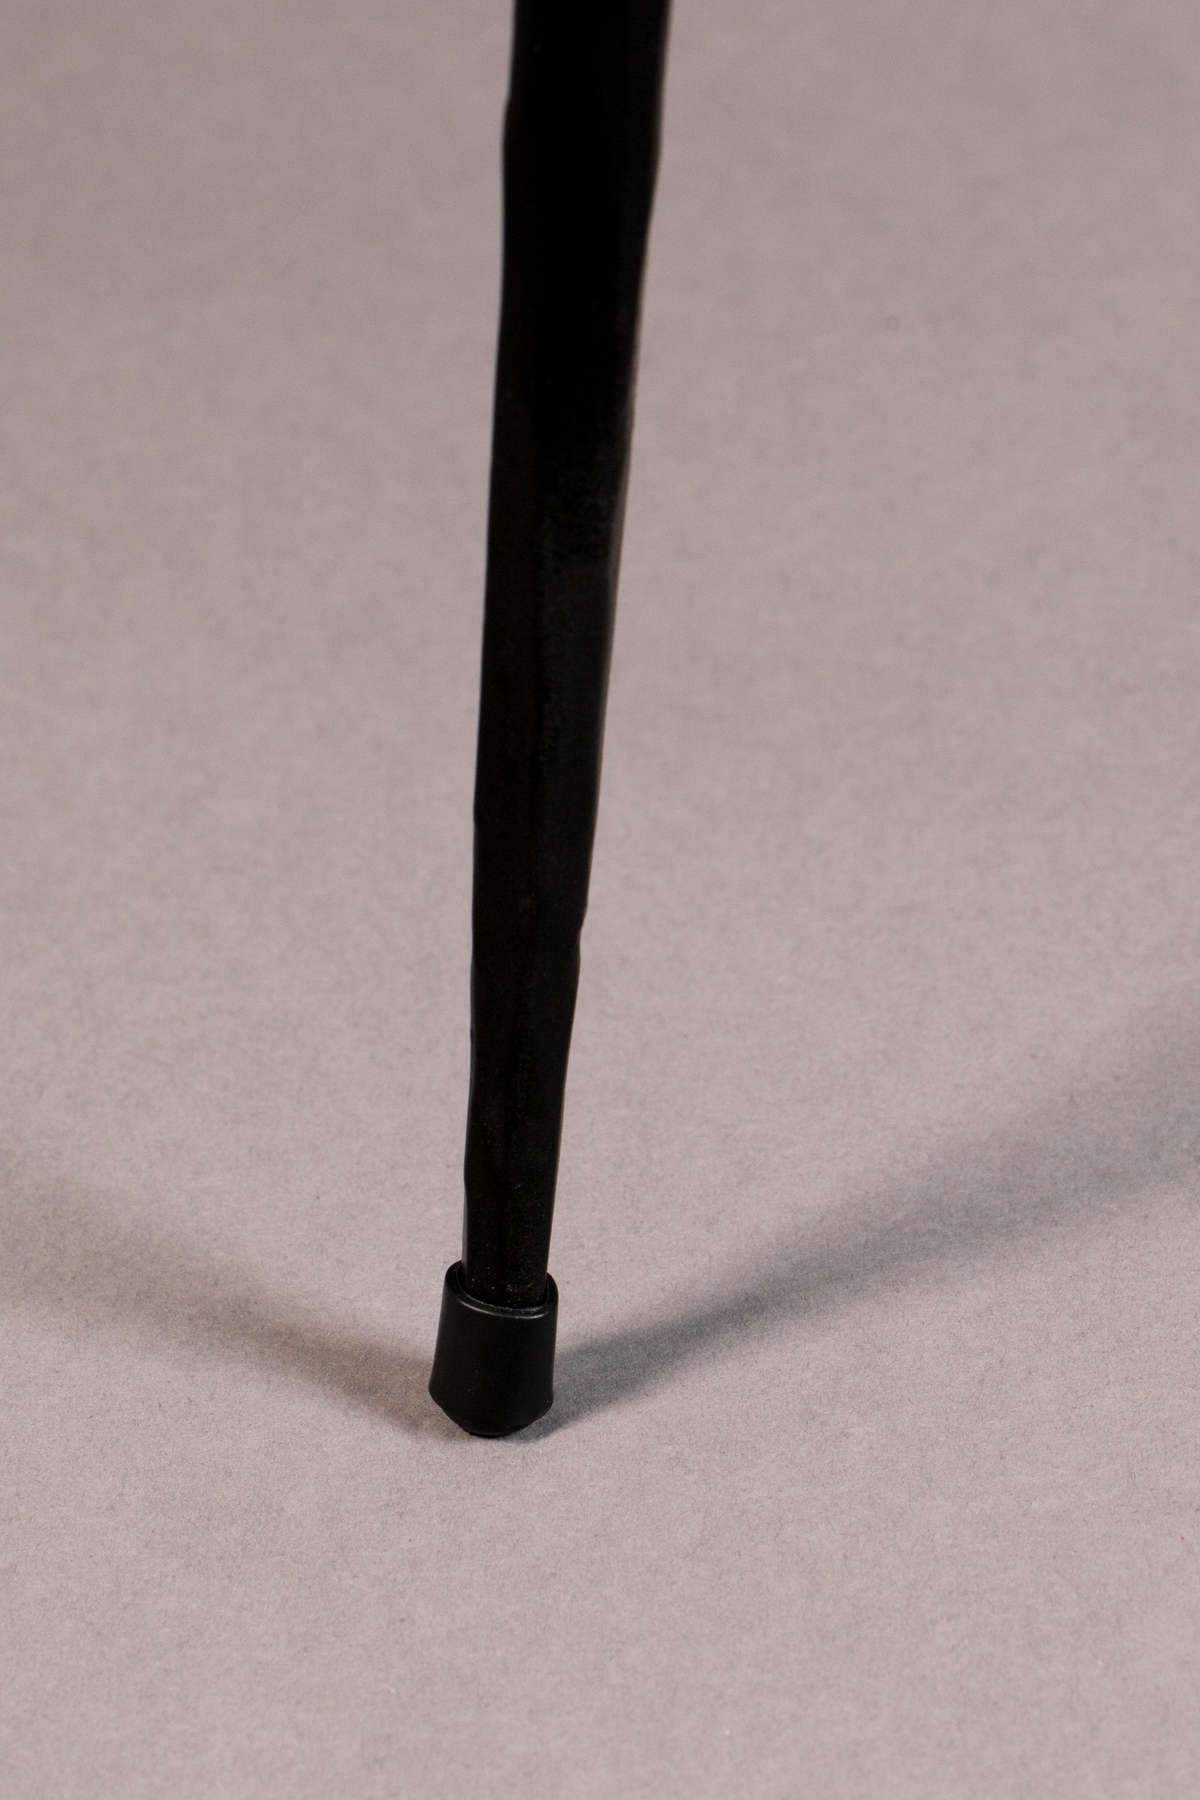 Coffee table PEPPER '40 black, Dutchbone, Eye on Design